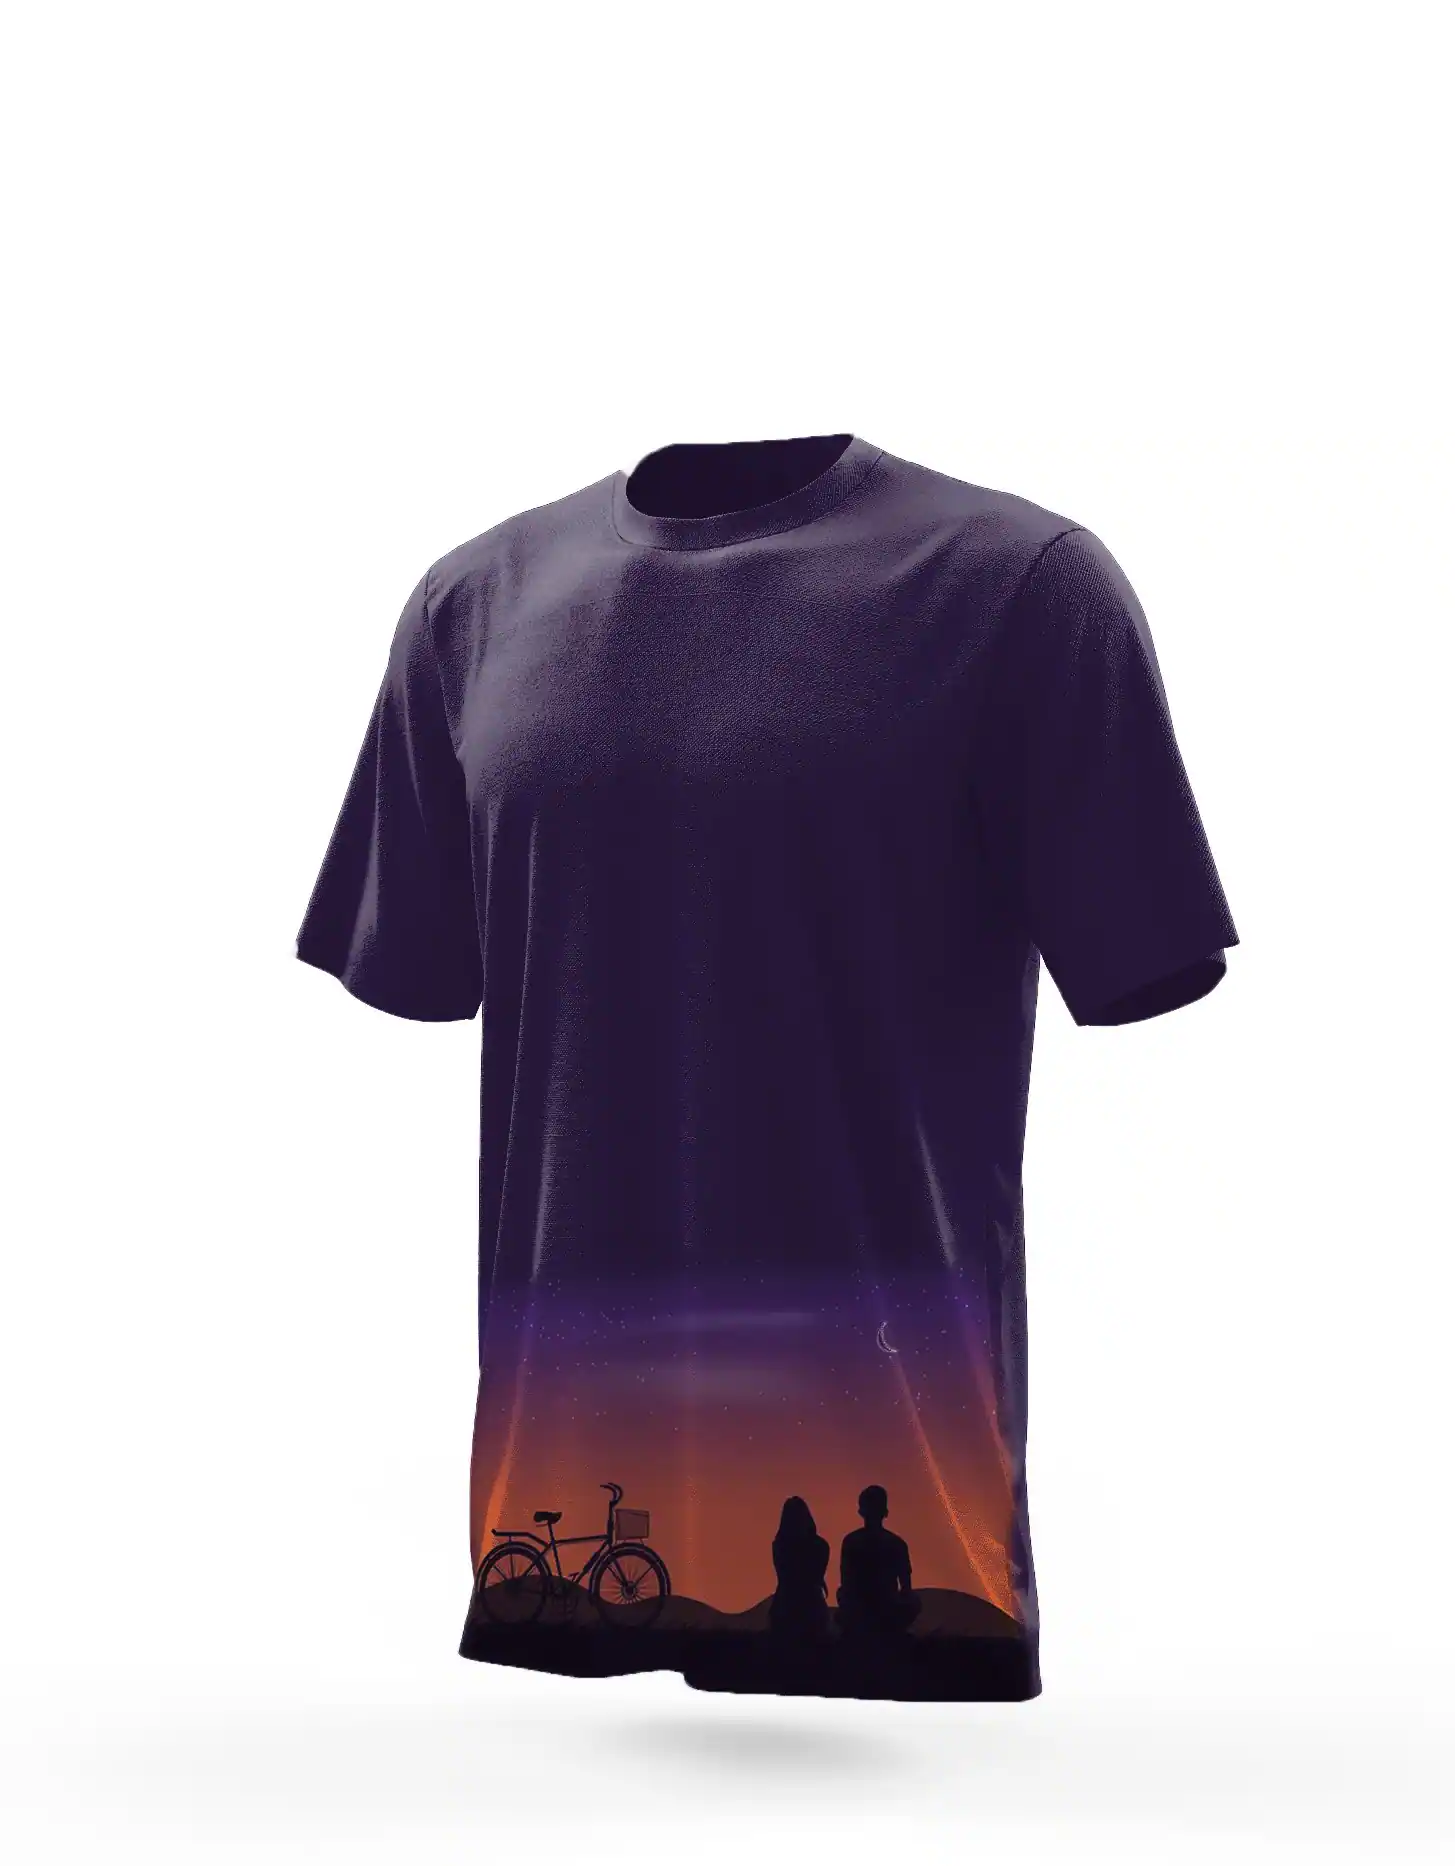 After Sunset View T-shirt